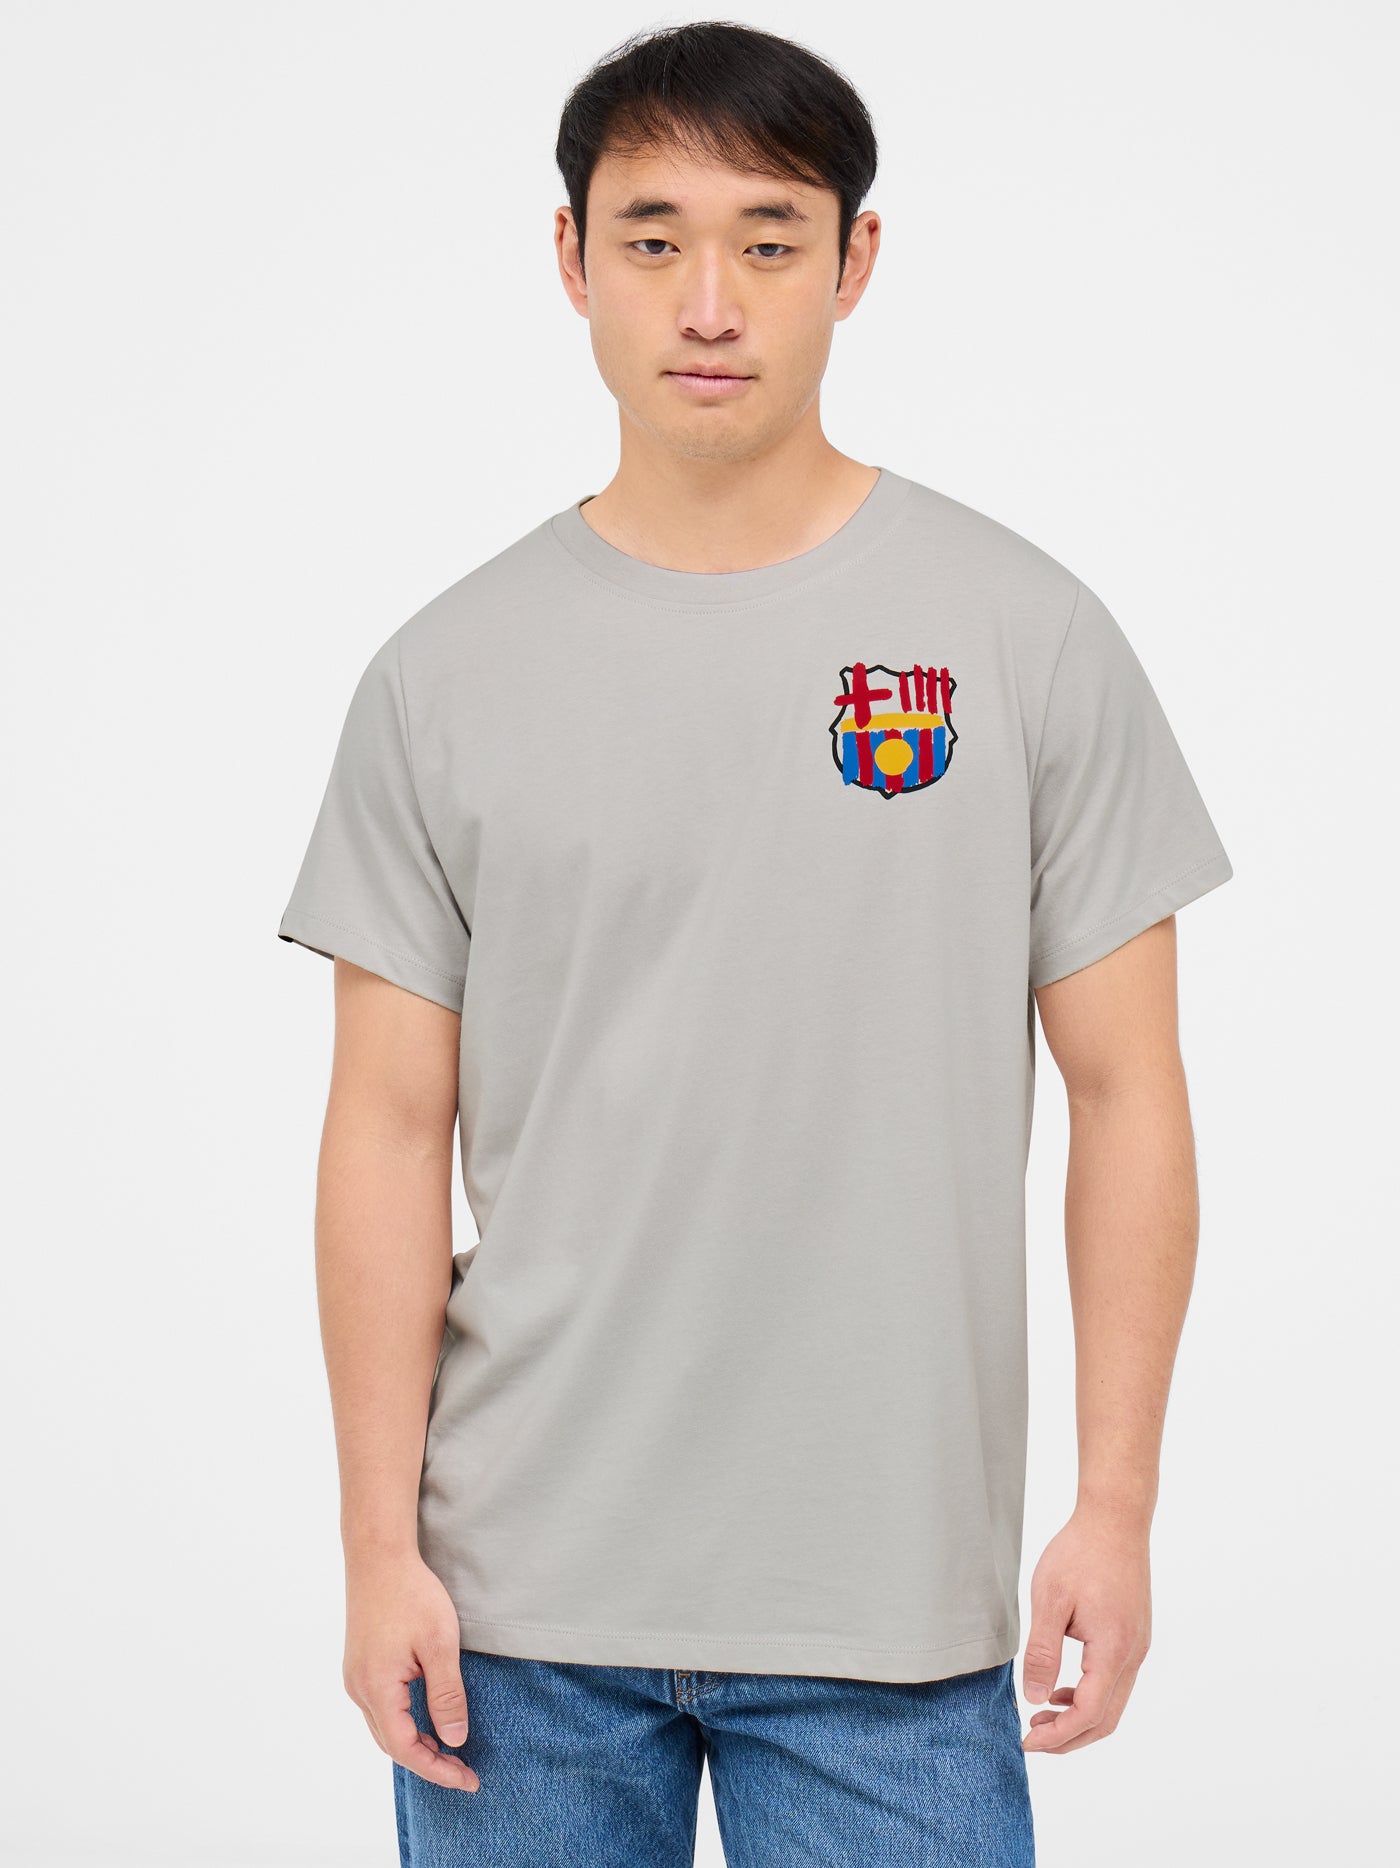 T-shirt gris du Barça